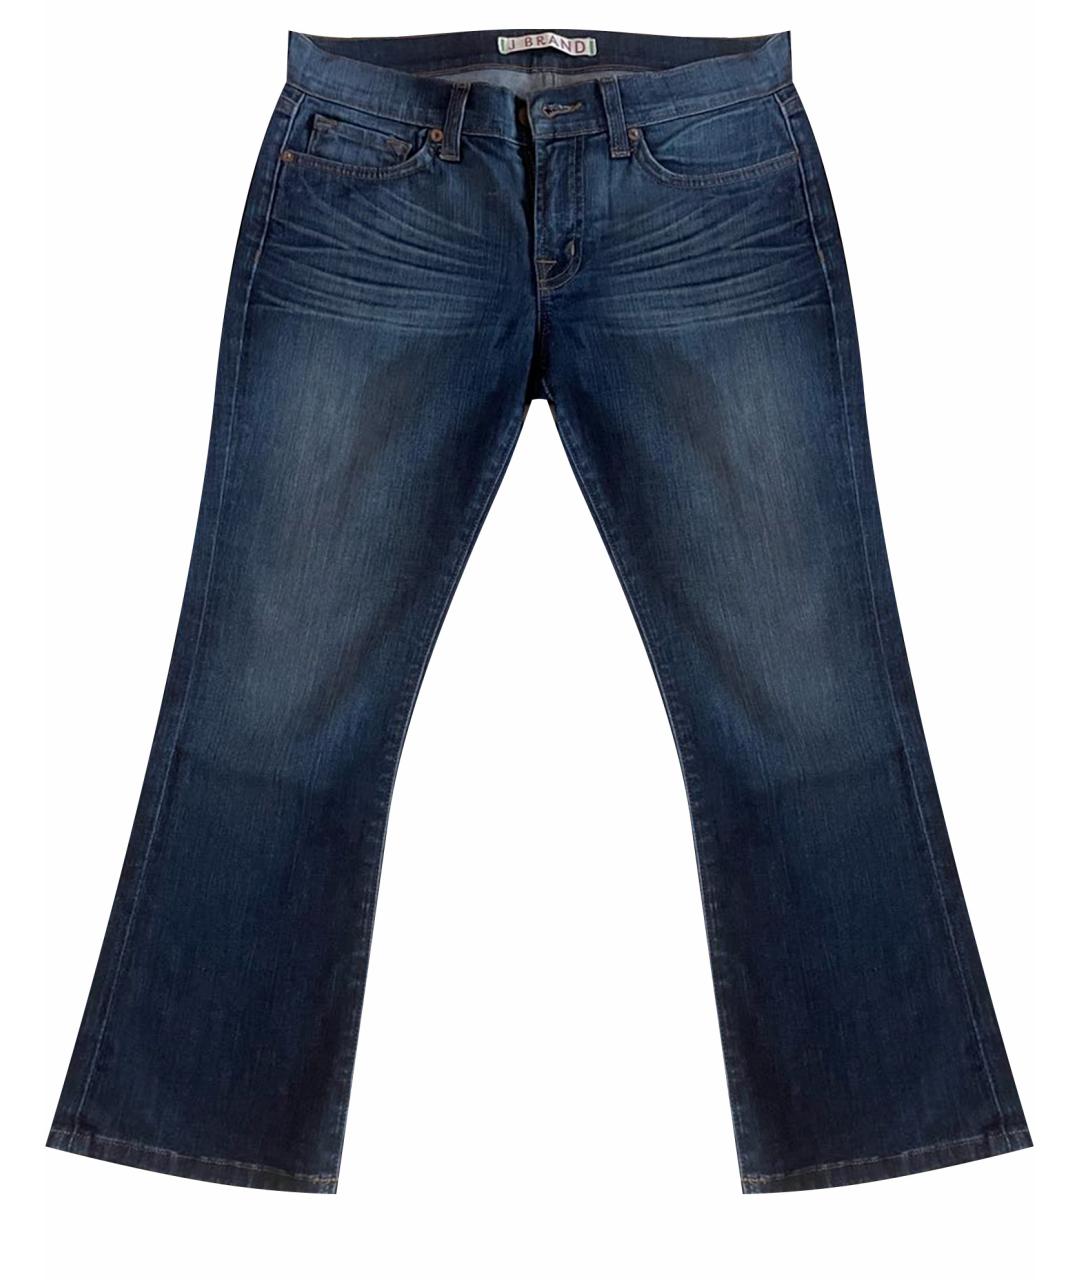 JBRAND Синие хлопковые джинсы клеш, фото 1